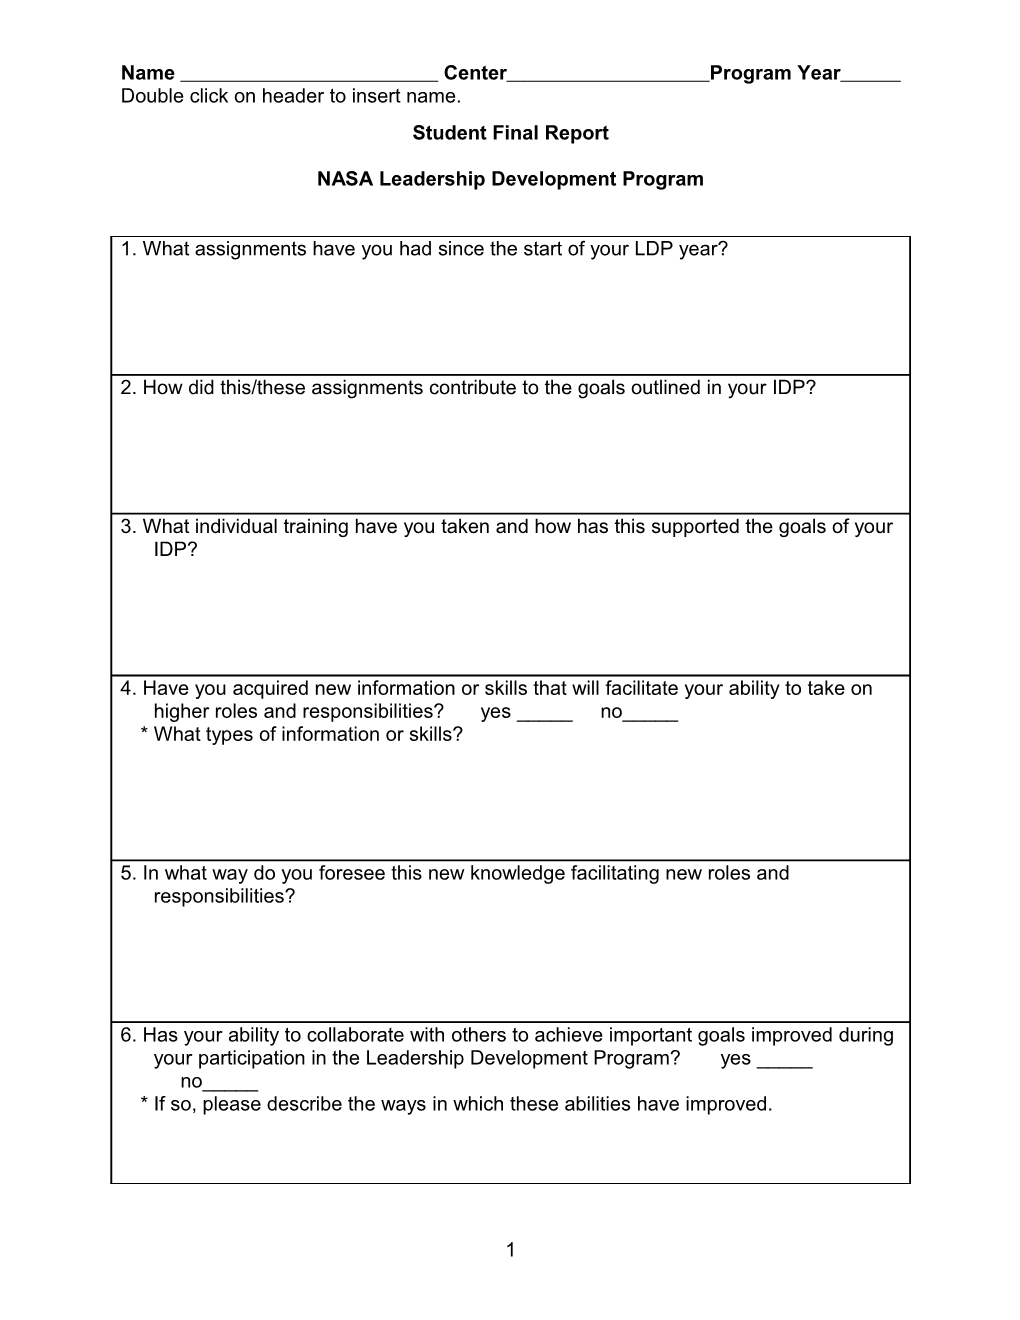 NASA Executive Potential Program